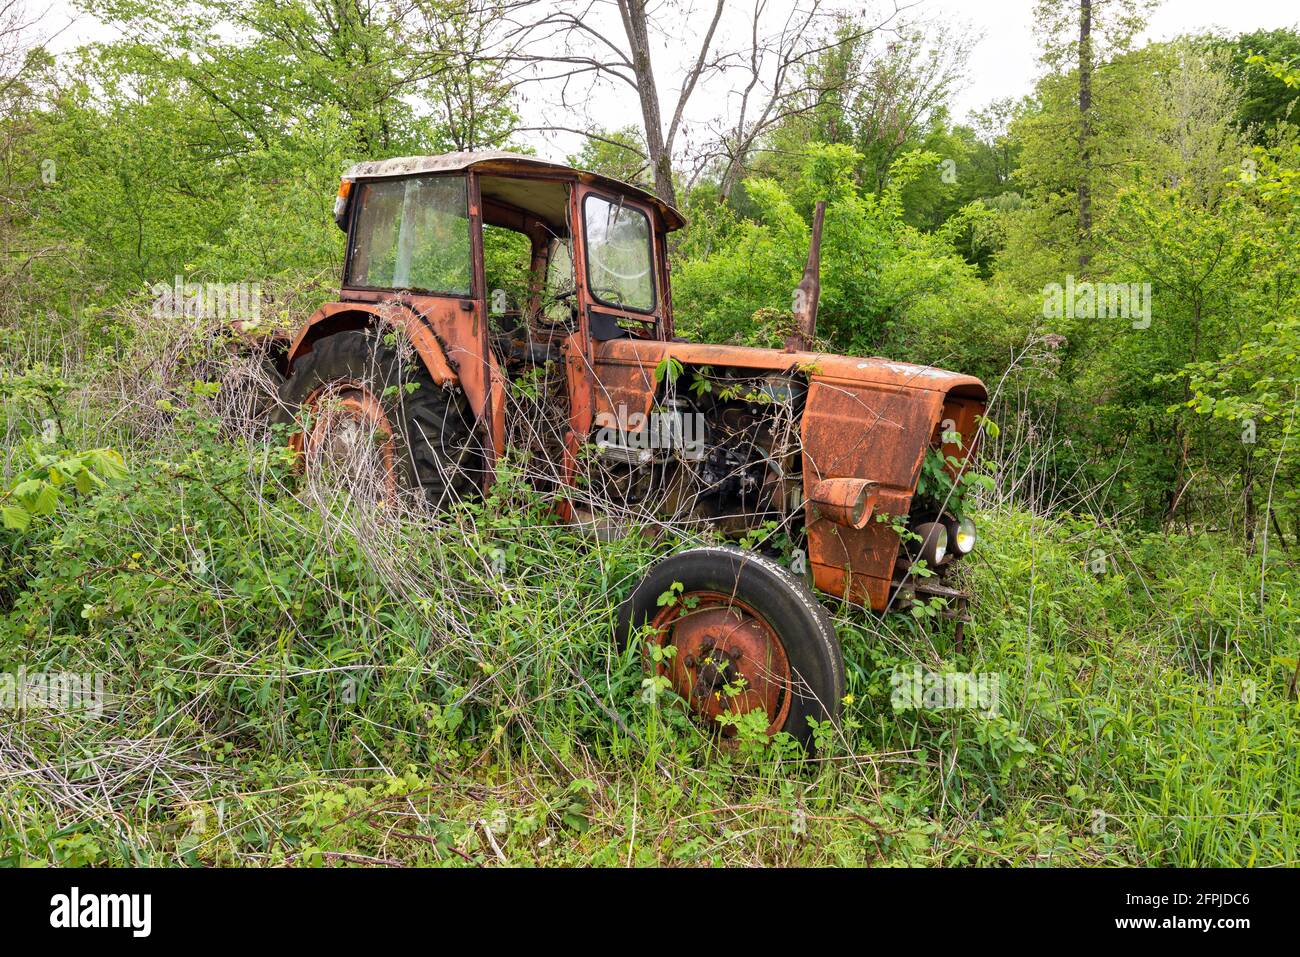 Vieux tracteur d'époque rouillé abandonné dans un champ surcultivé avec de l'herbe haute. Banque D'Images